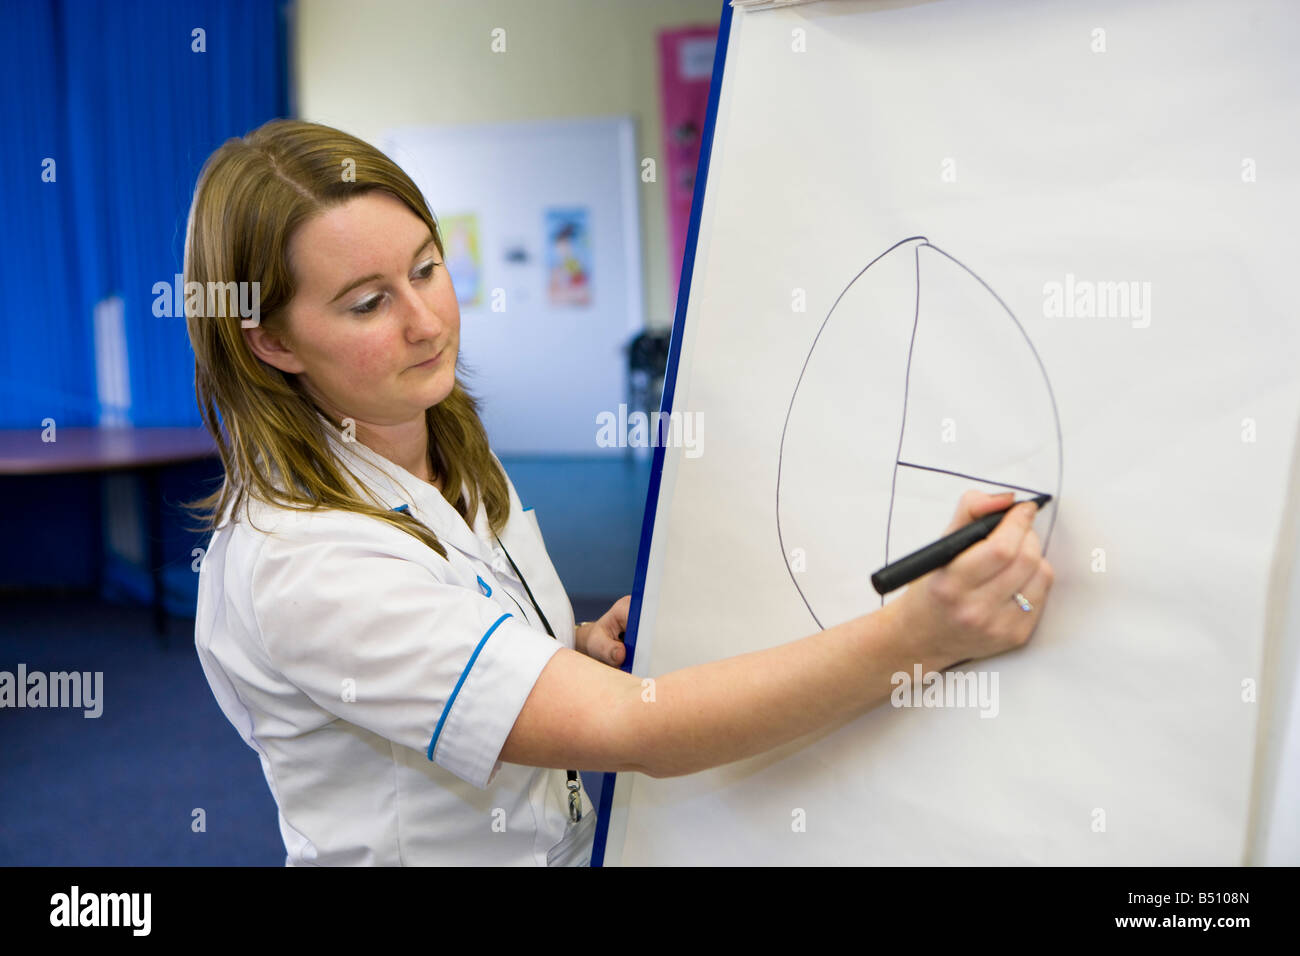 Enfermera usando un gráfico de tarta para enseñar a grupos de alimentos en una clase de alimentación saludable Foto de stock